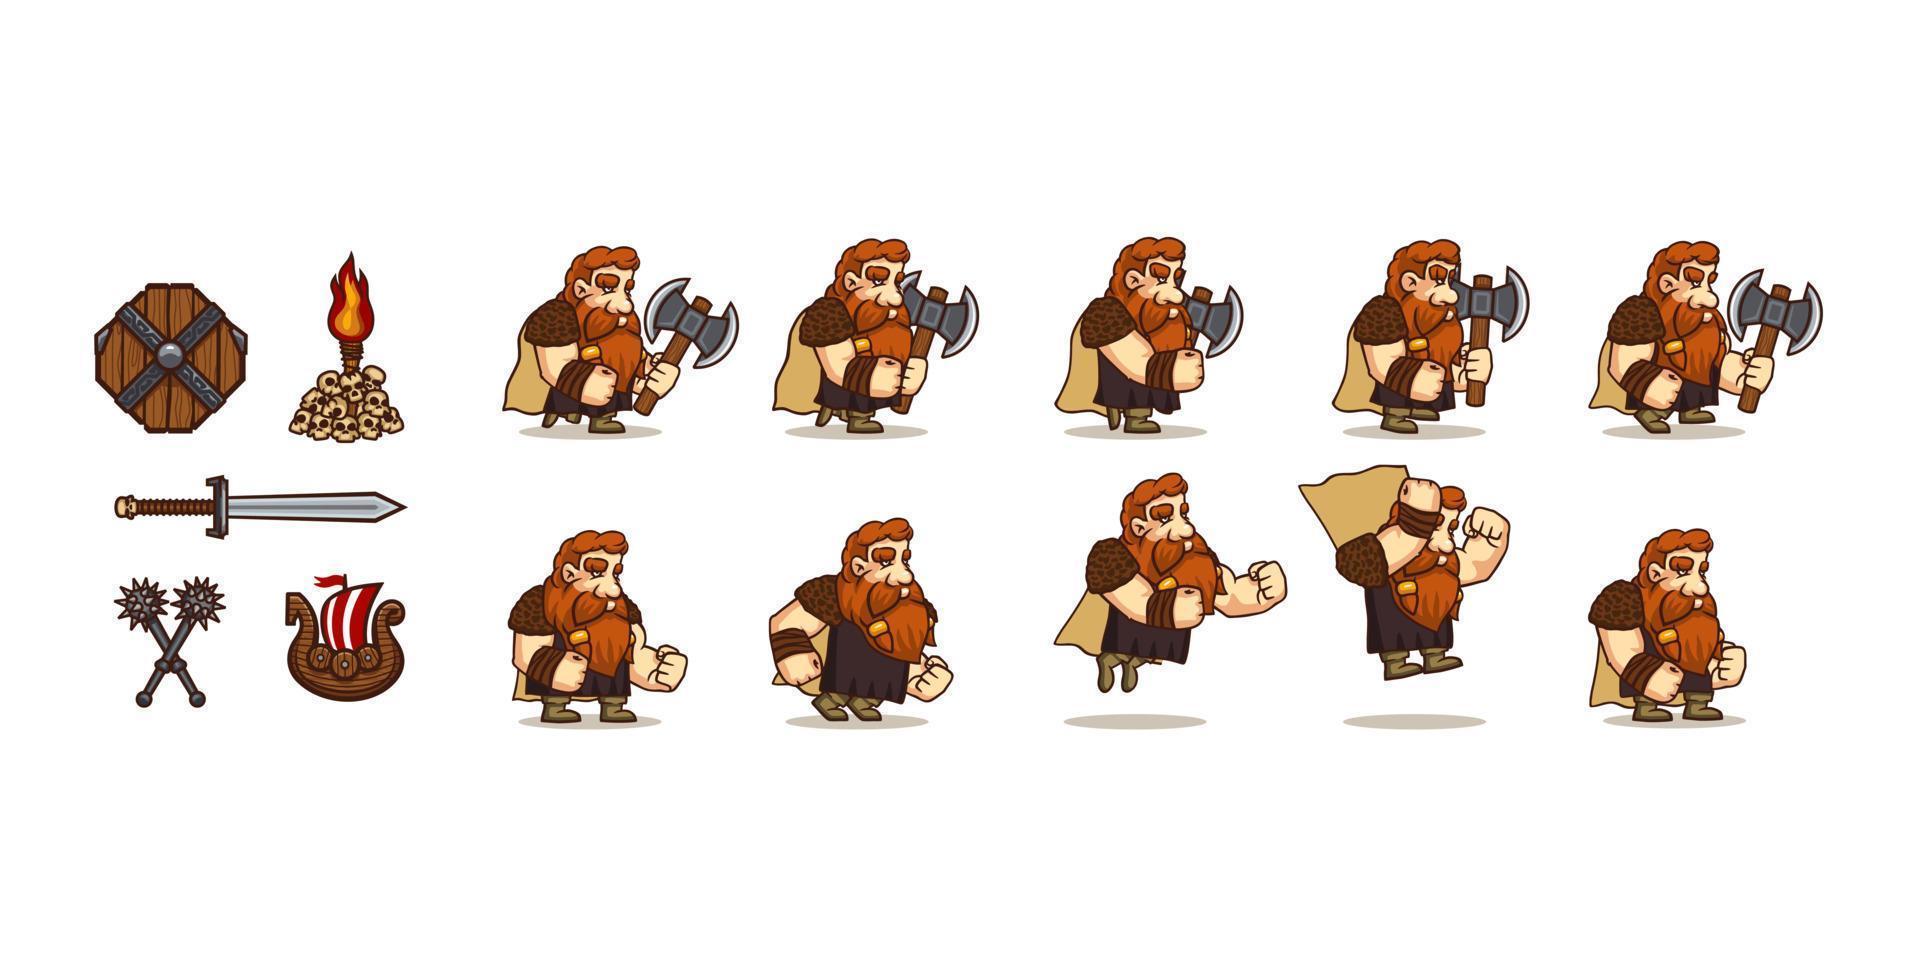 secuencia del ciclo de caminata y salto del personaje del juego vikingo vector